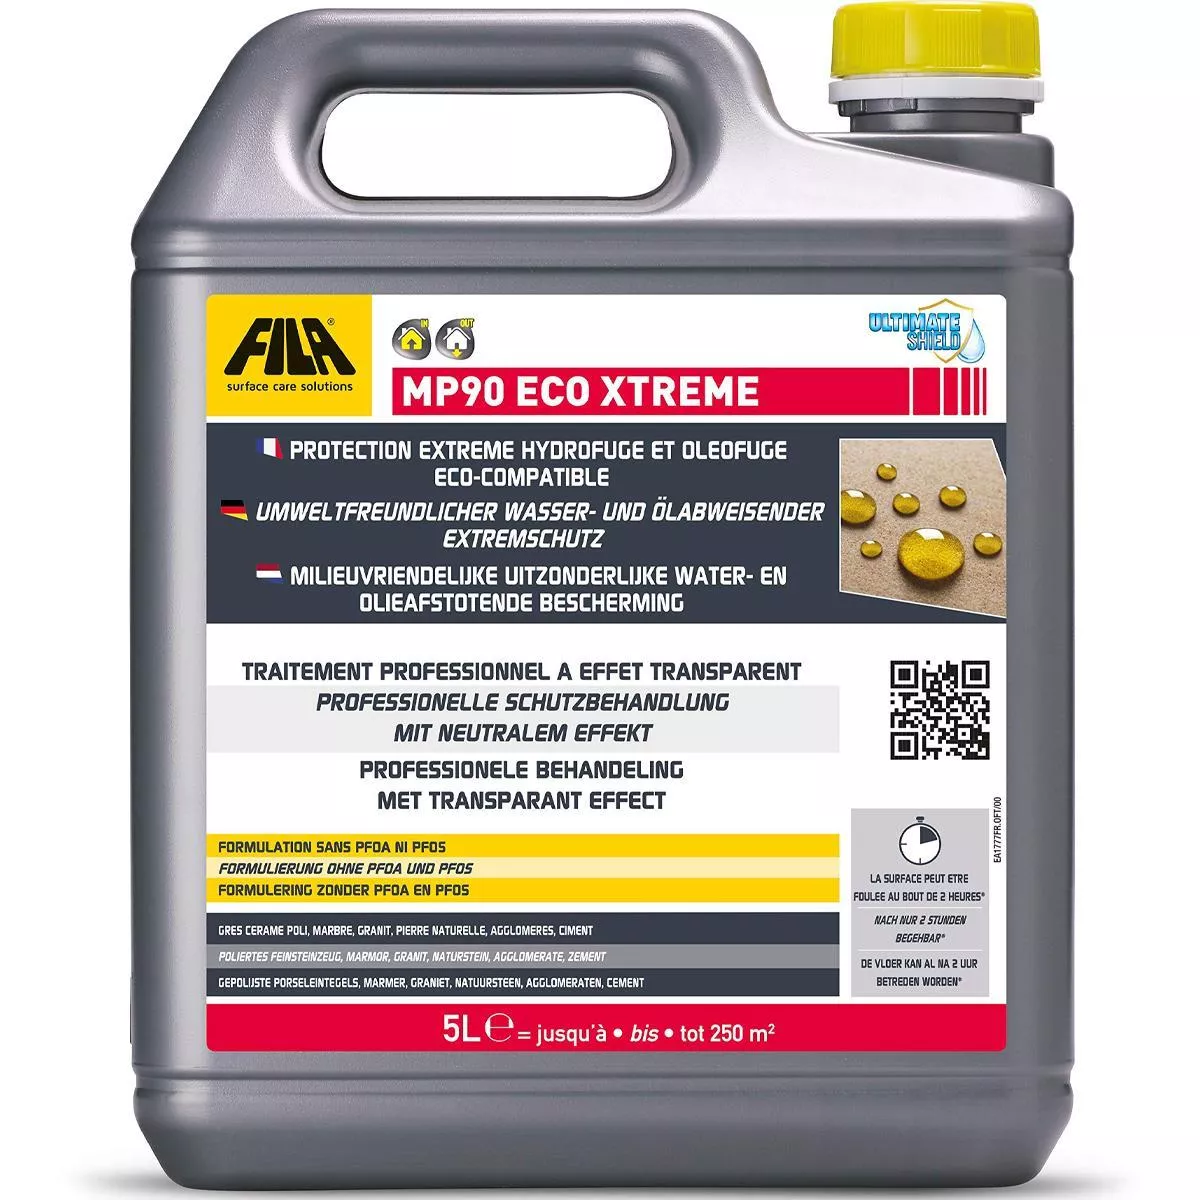 Fila MP90 ECO XTREME Repelente al agua y aceite Protección extrema 5 L